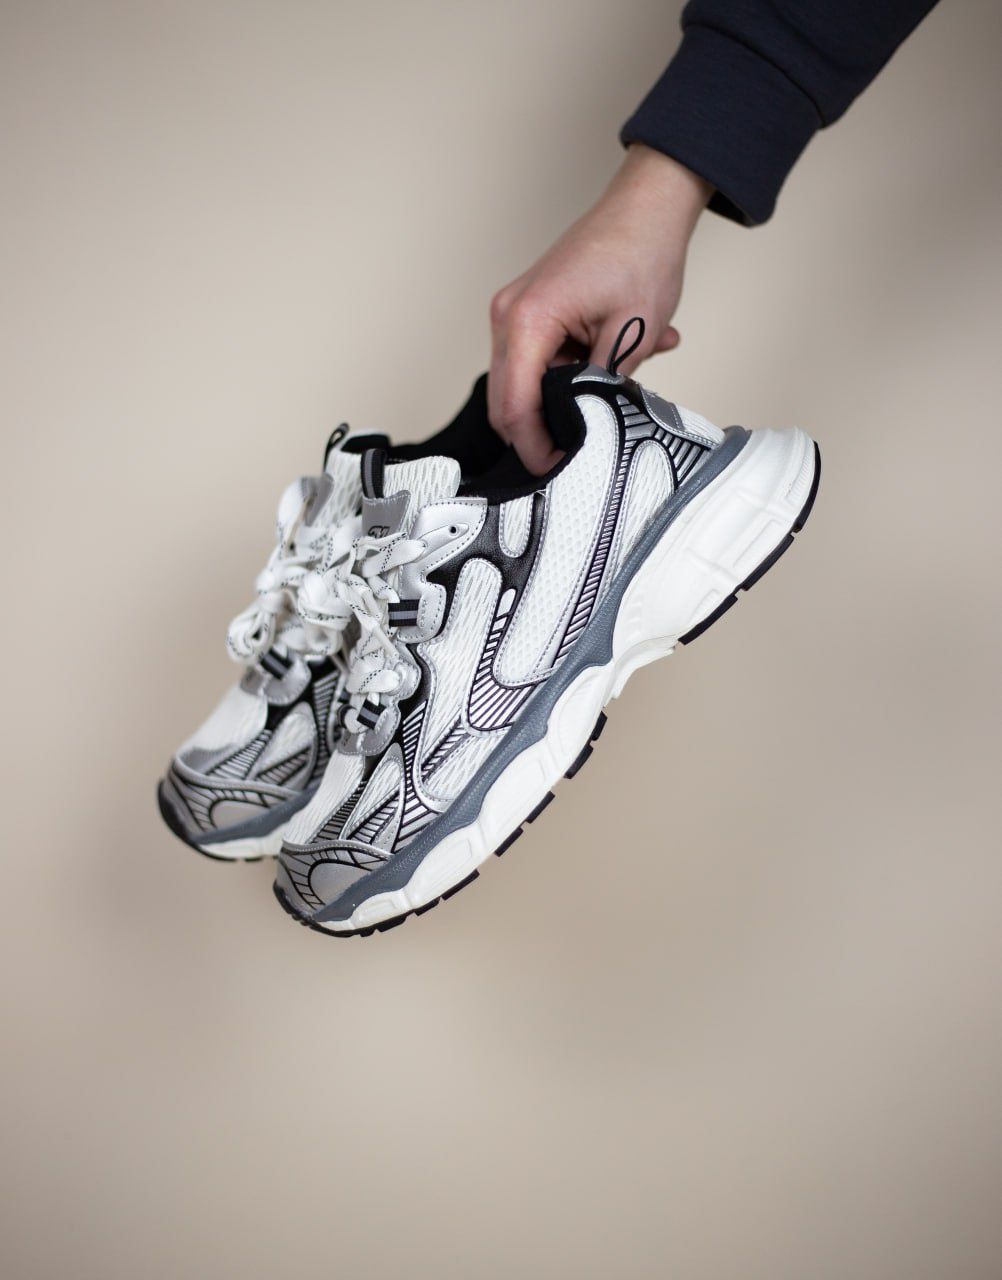 Жіночі кросівки Balenciaga 3xl White silver/black масивні товста